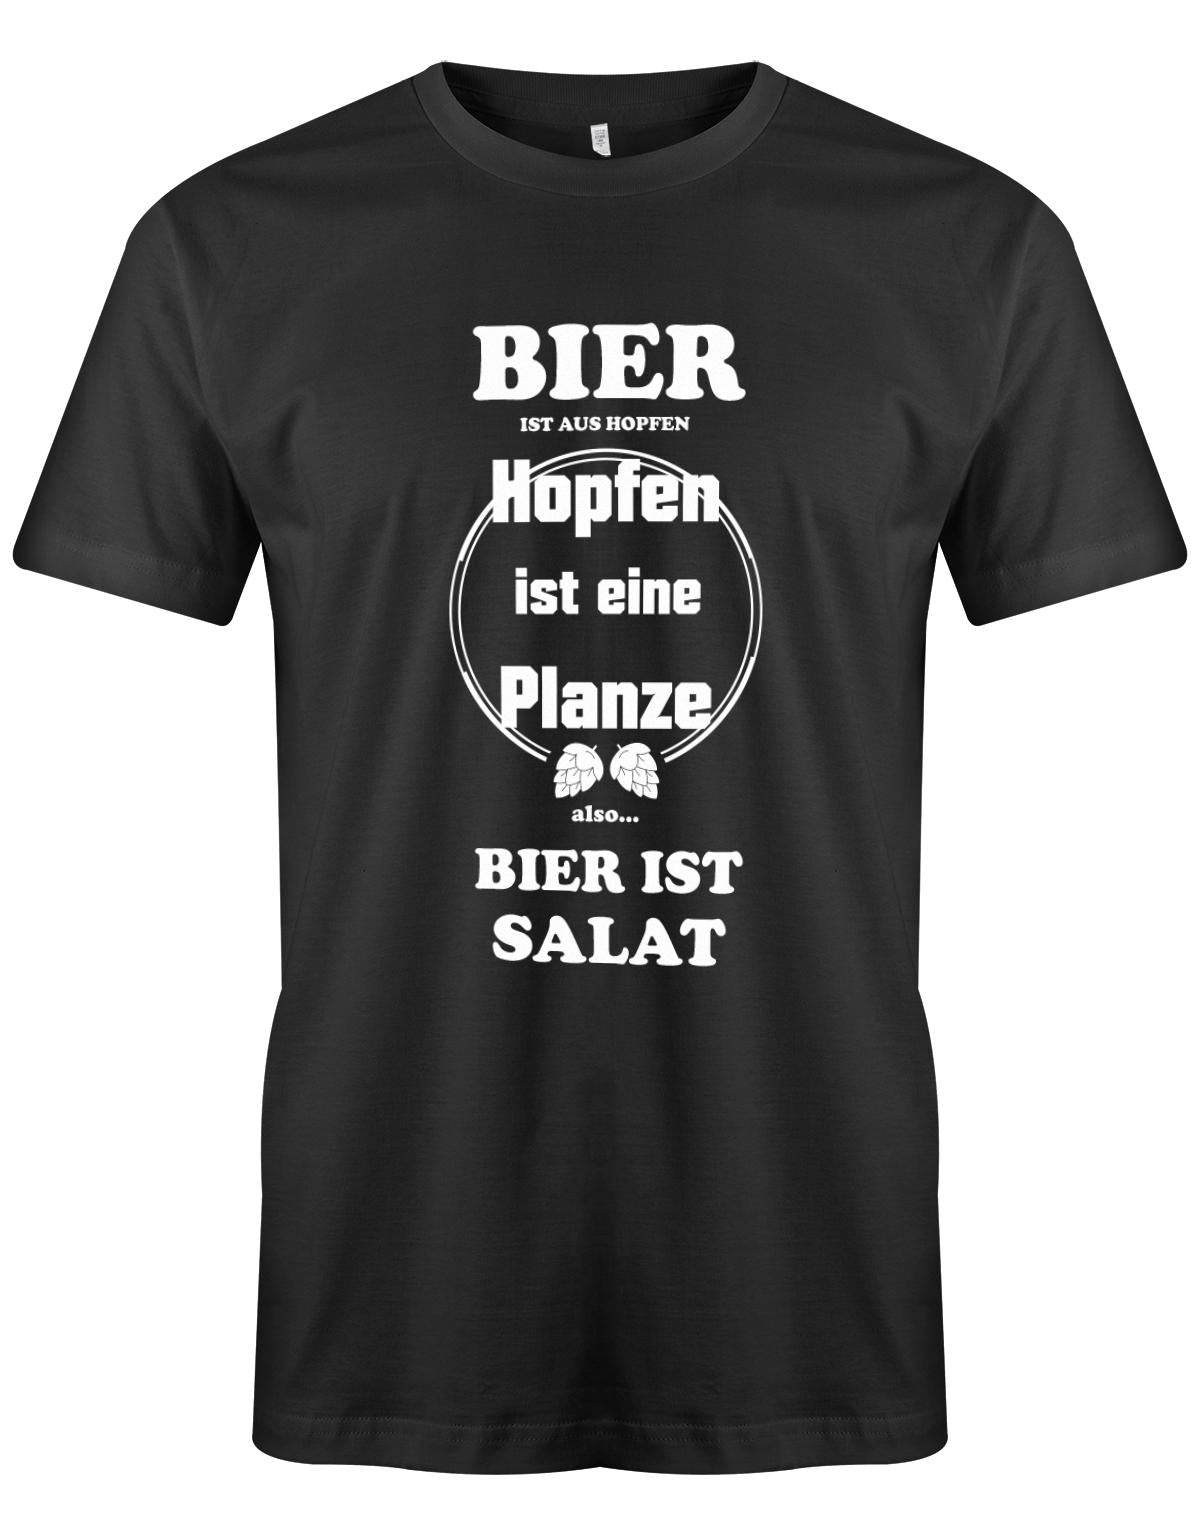 Bier-ist-aus-Hopfen-Hopfen-ist-eine-Pflanze-Bier-ist-Salat-herren-Shirt-SChwarz